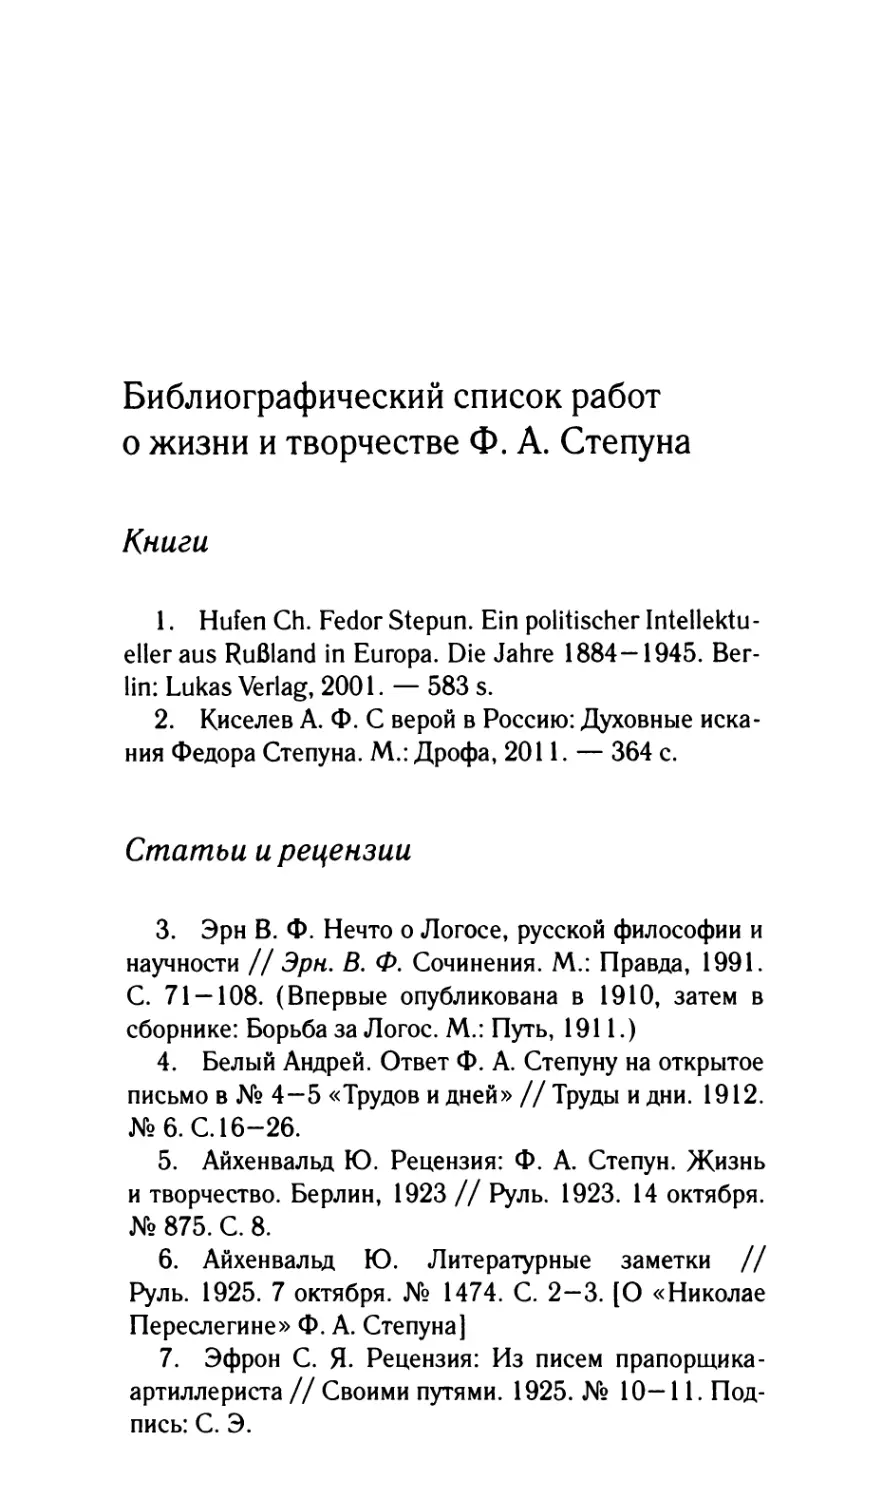 Библиографический список работ о жизни и творчестве Ф.А. Степуна